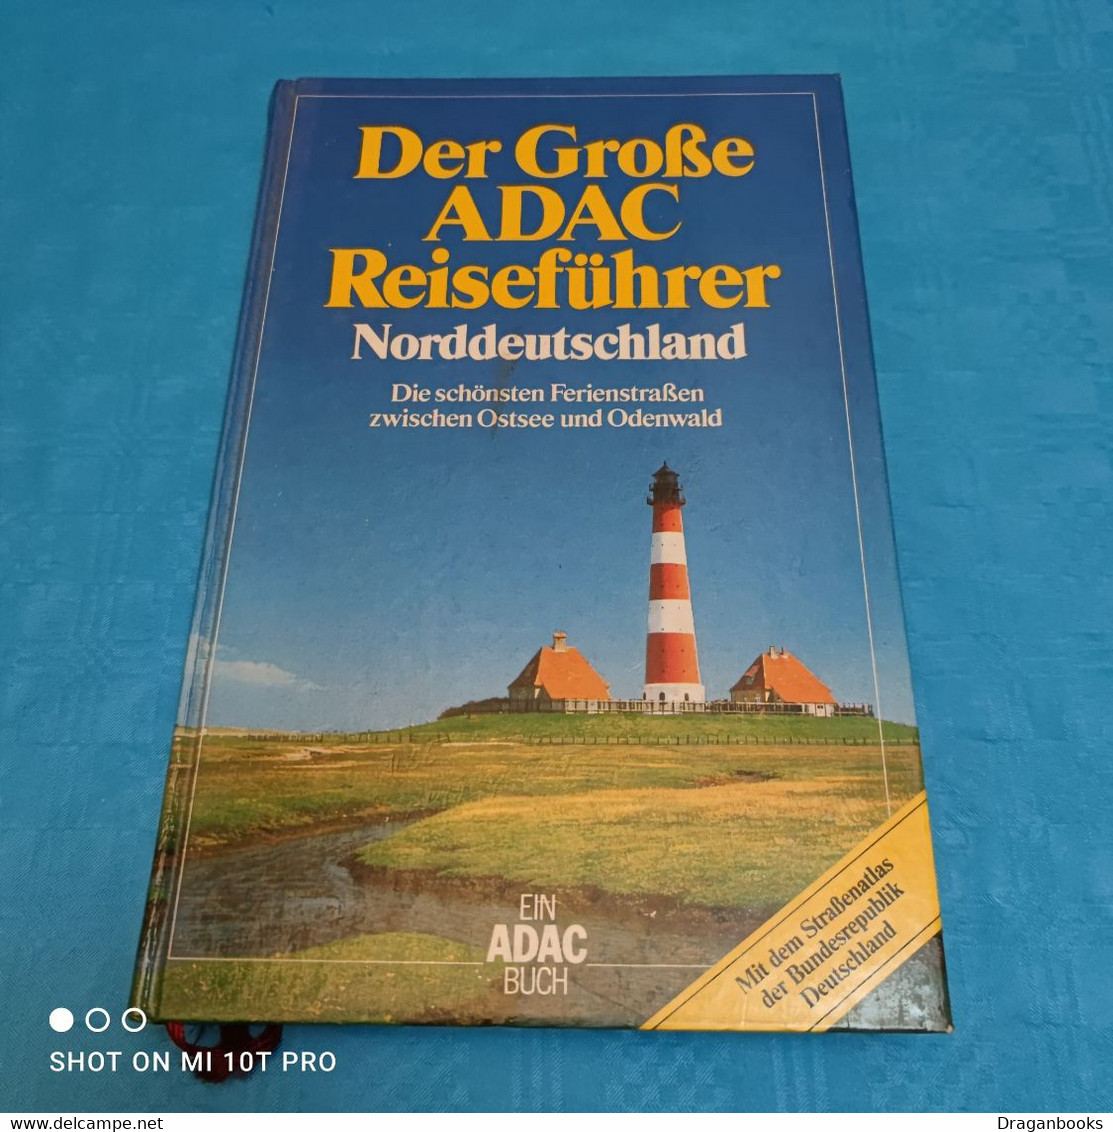 Der Grosse ADAC Reiseführer - Norddeutschland - Allemagne (général)